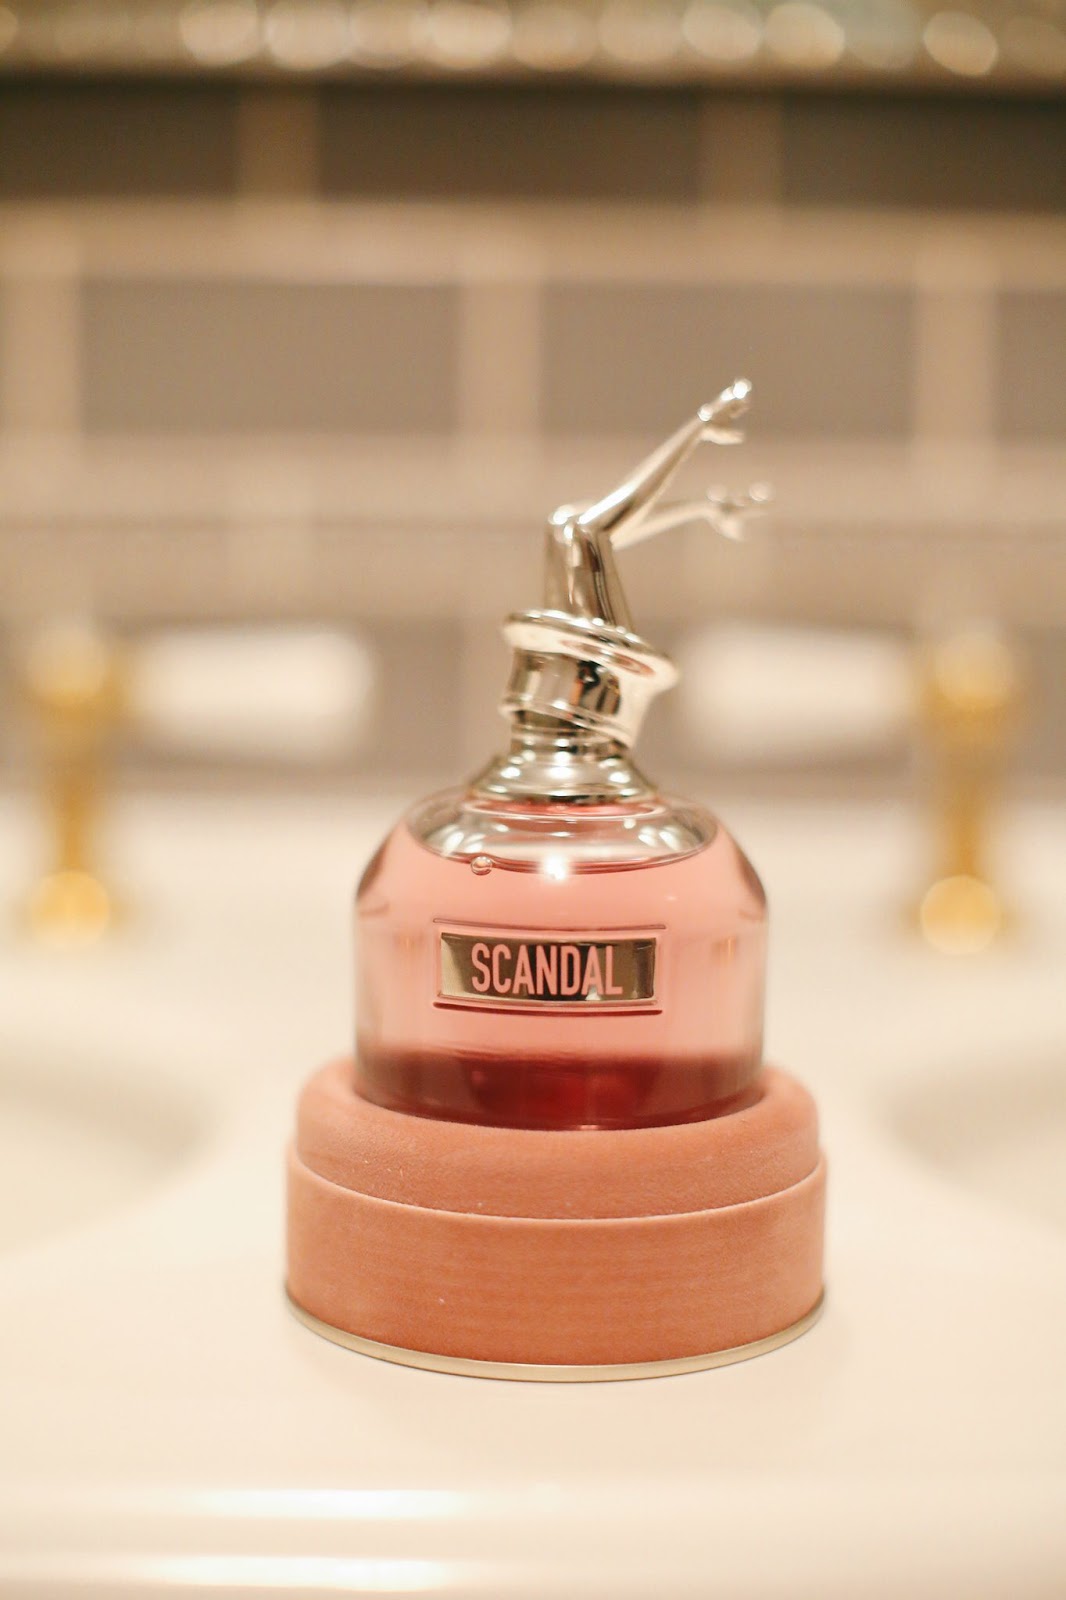 scandal perfume by jean Paul gaultier